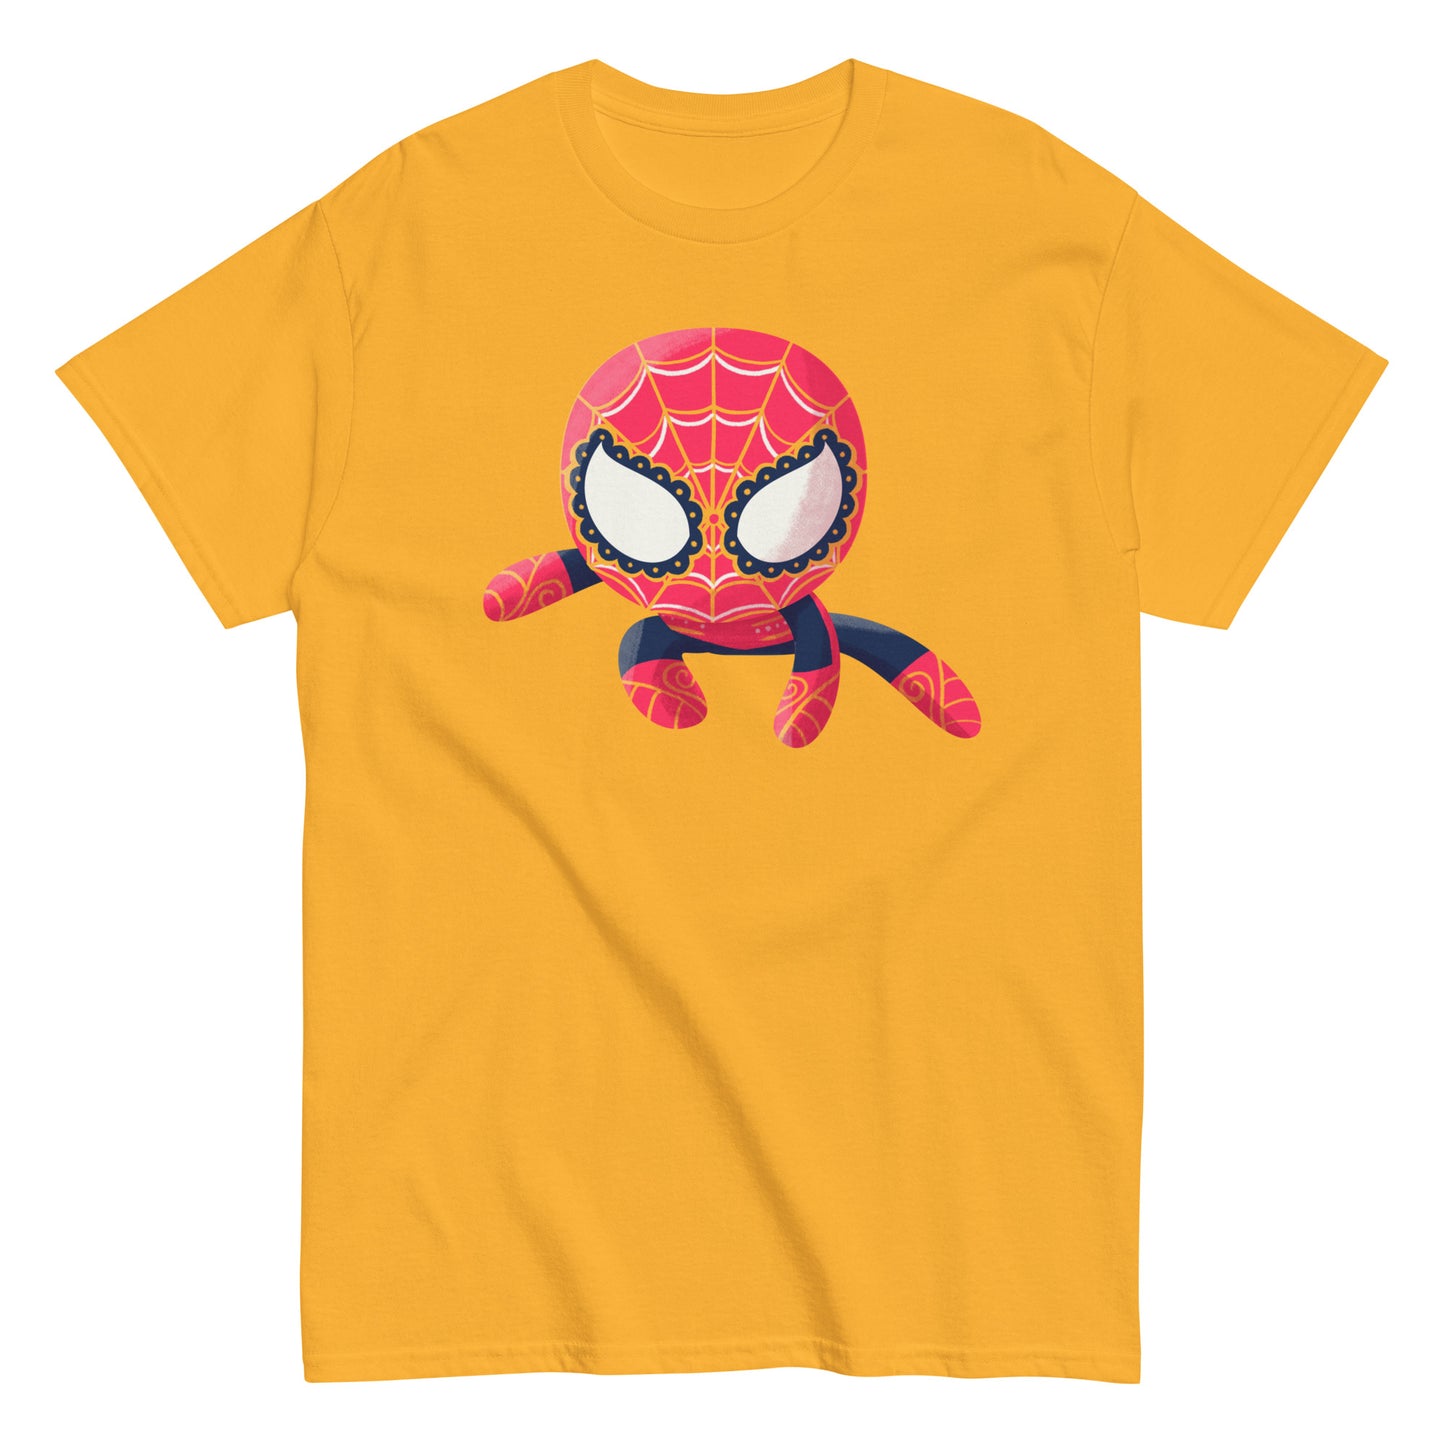 Spider-Man PopMuertos Sugar Skull T-Shirt